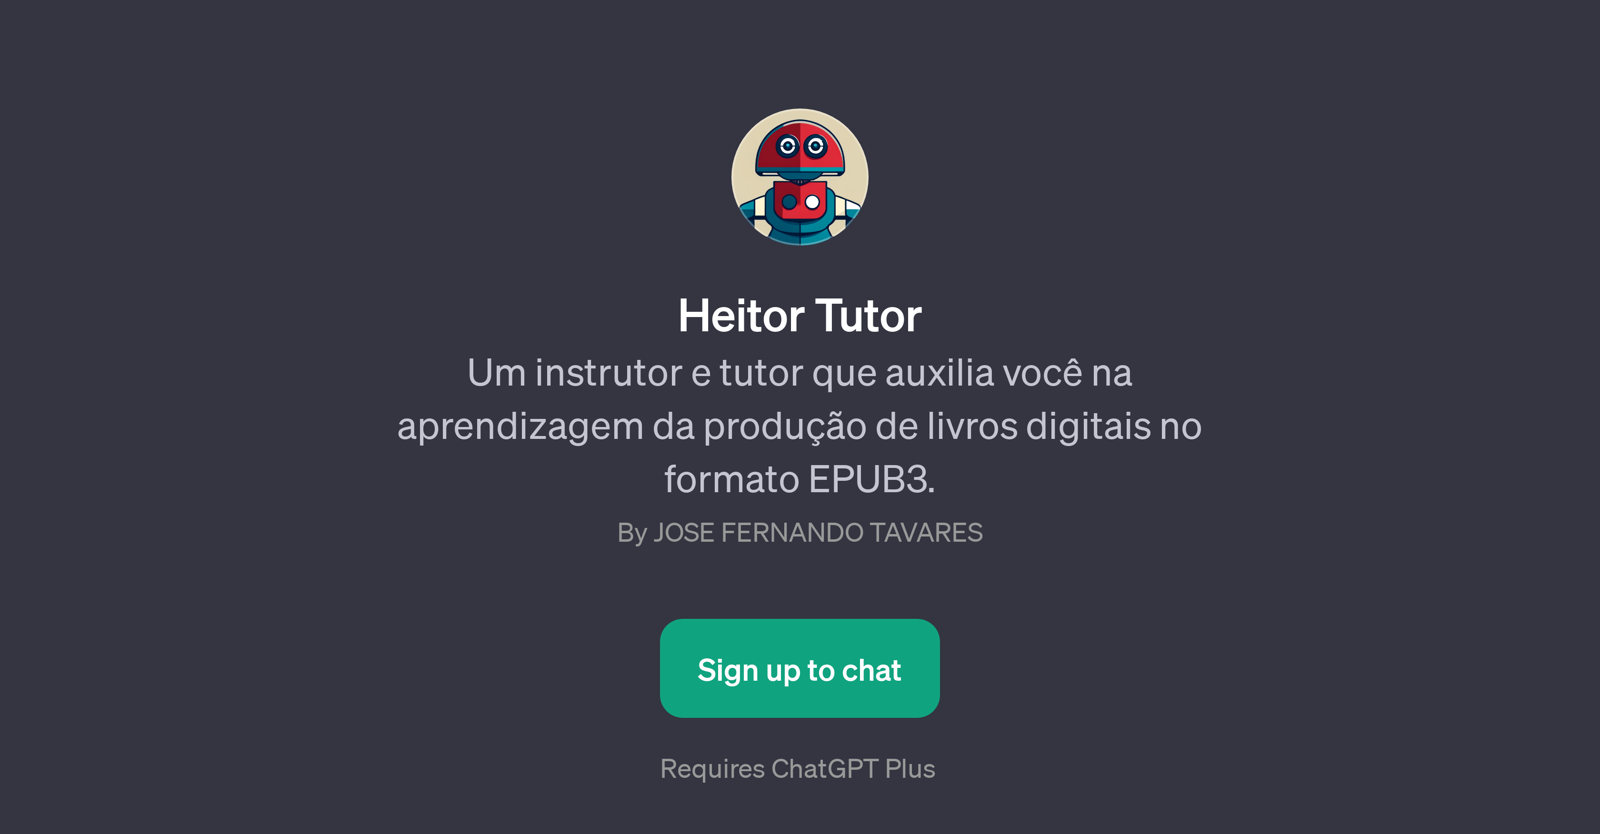 Heitor Tutor website